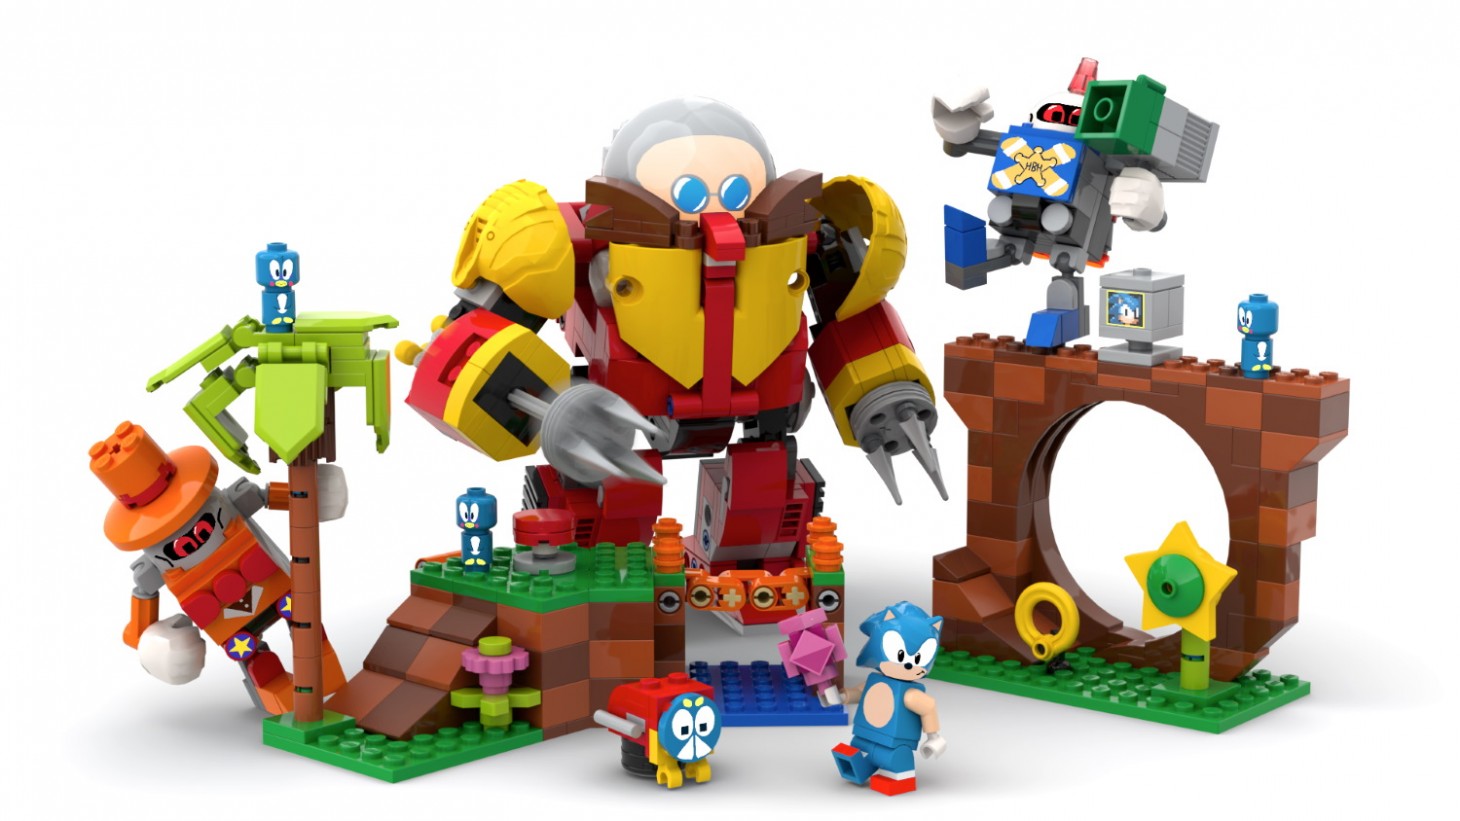 Sonic Lego Set Based On Fan Design Greenlit For Production - Game Informer